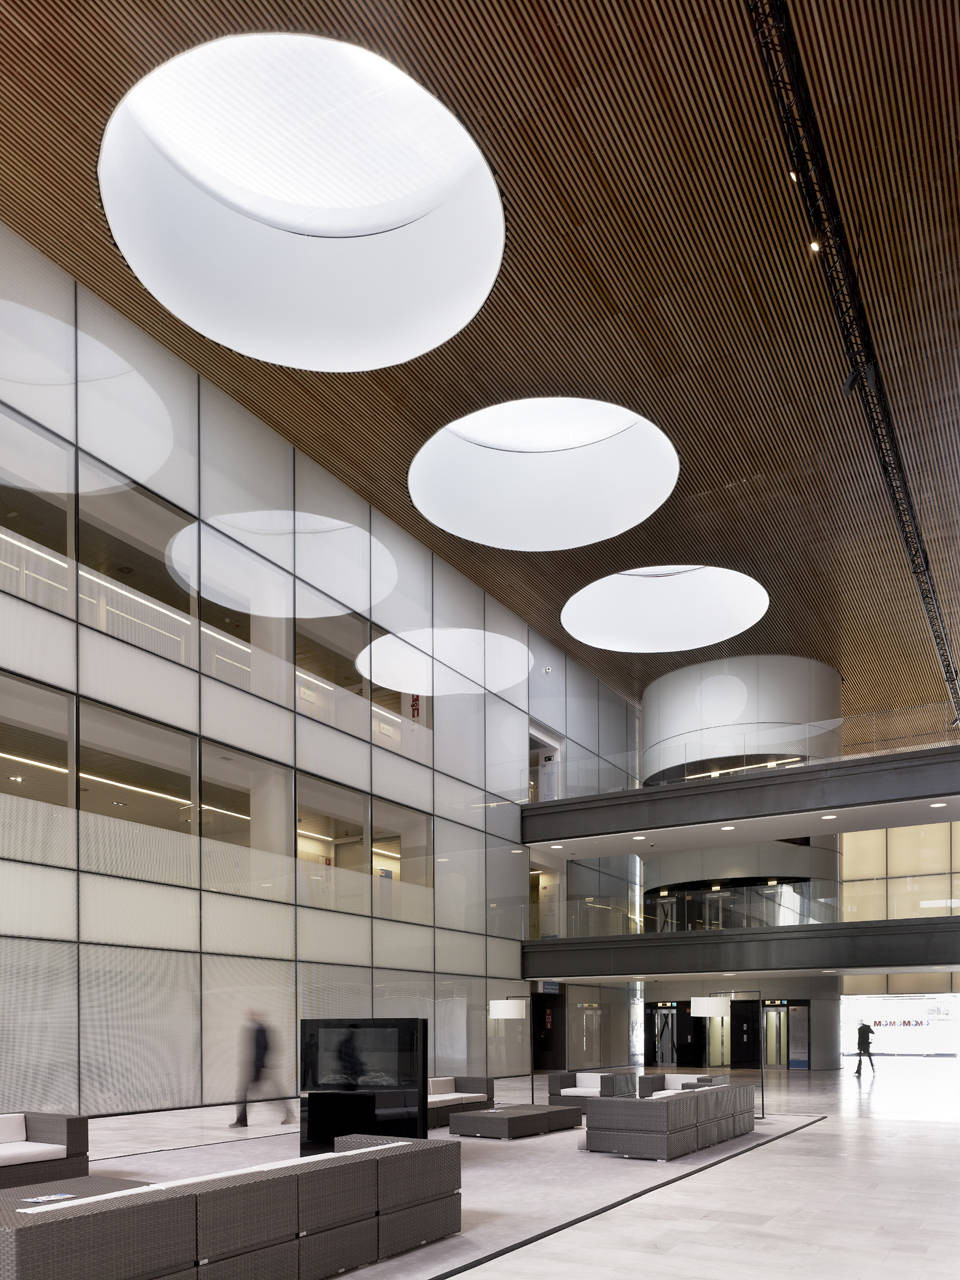 بیمارستان با معماری مدرن و انرژی مثبت